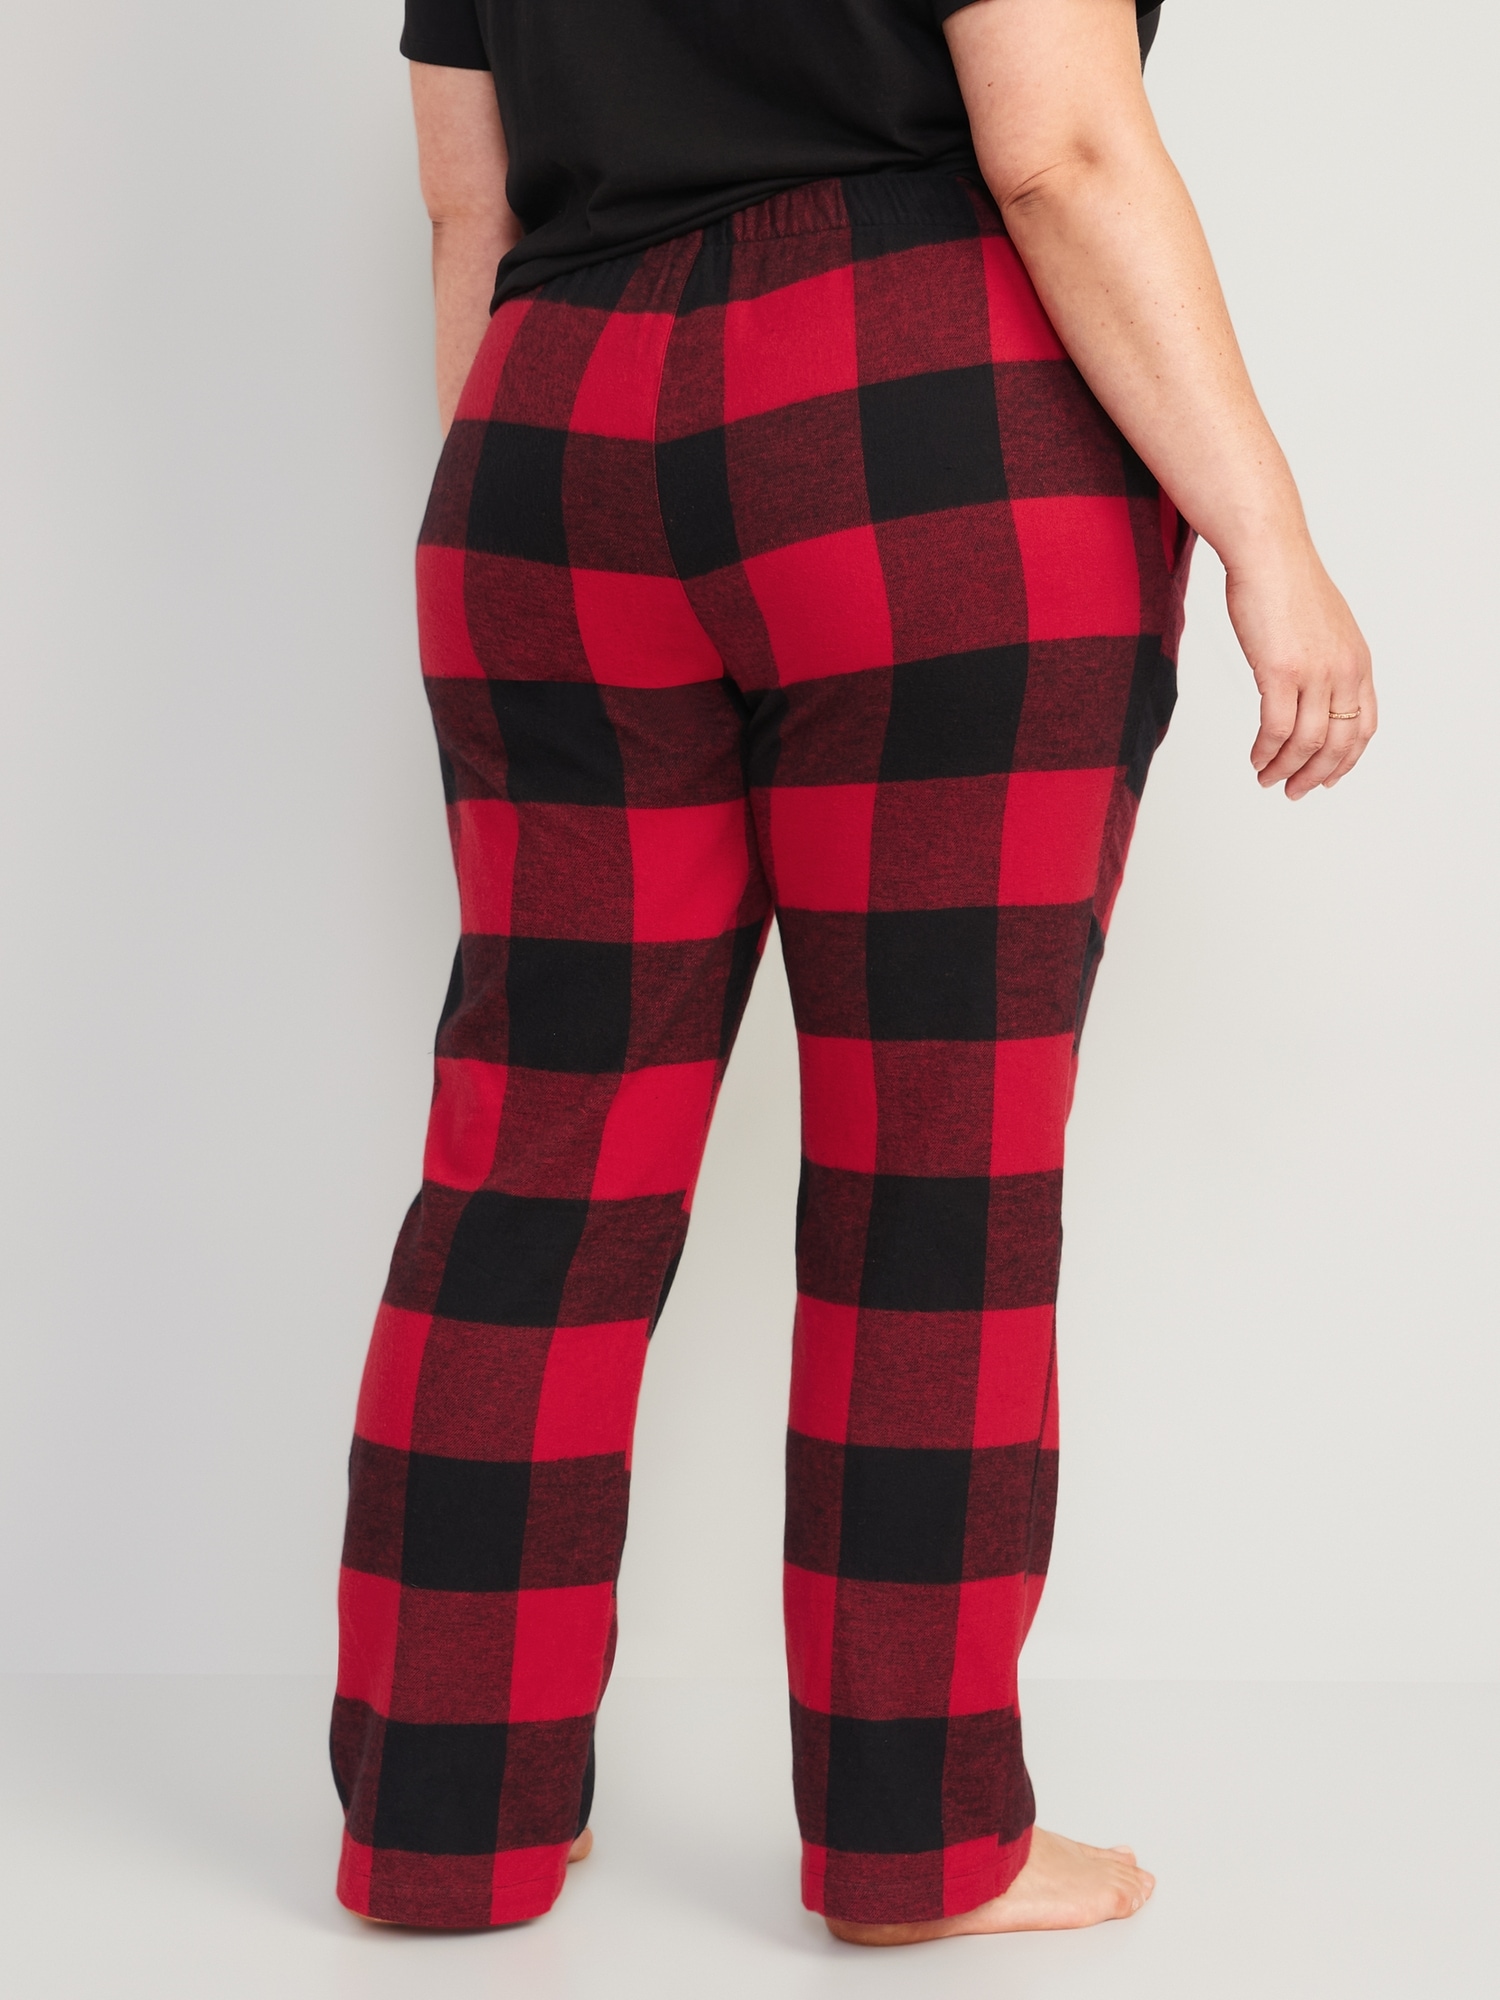 Pajama Pants for Women 100% Cotton Flannel Plaid Lounge Pants 